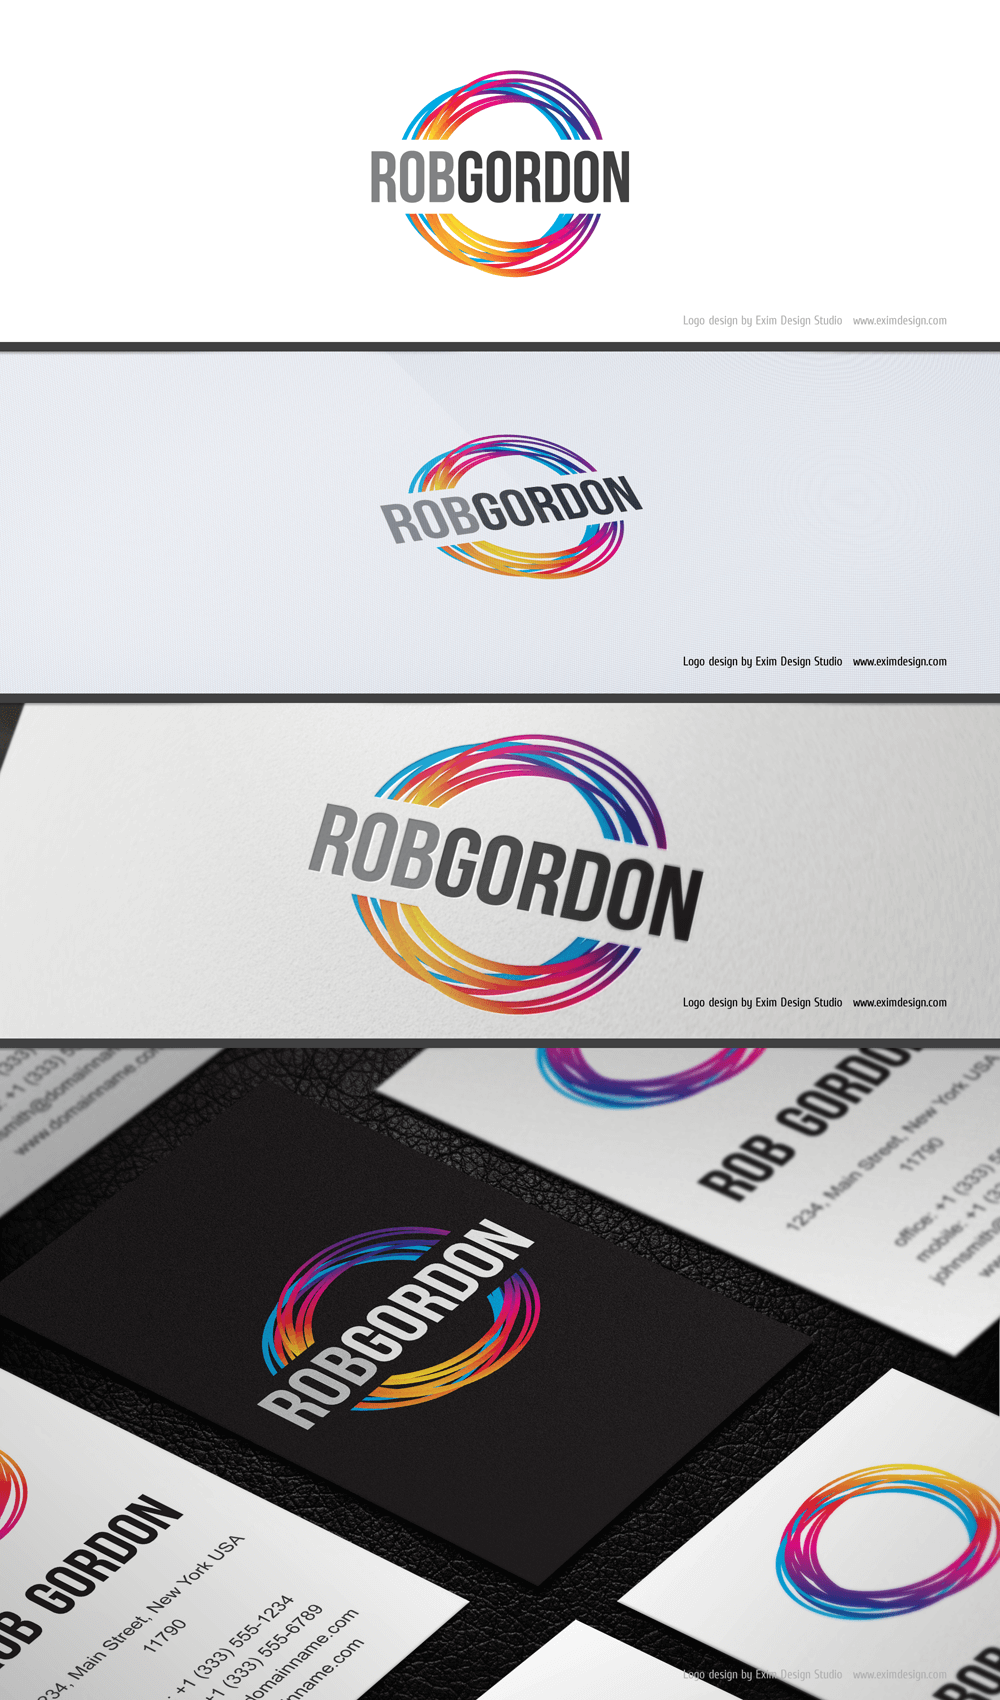 eximdesign_robgordon_1.png